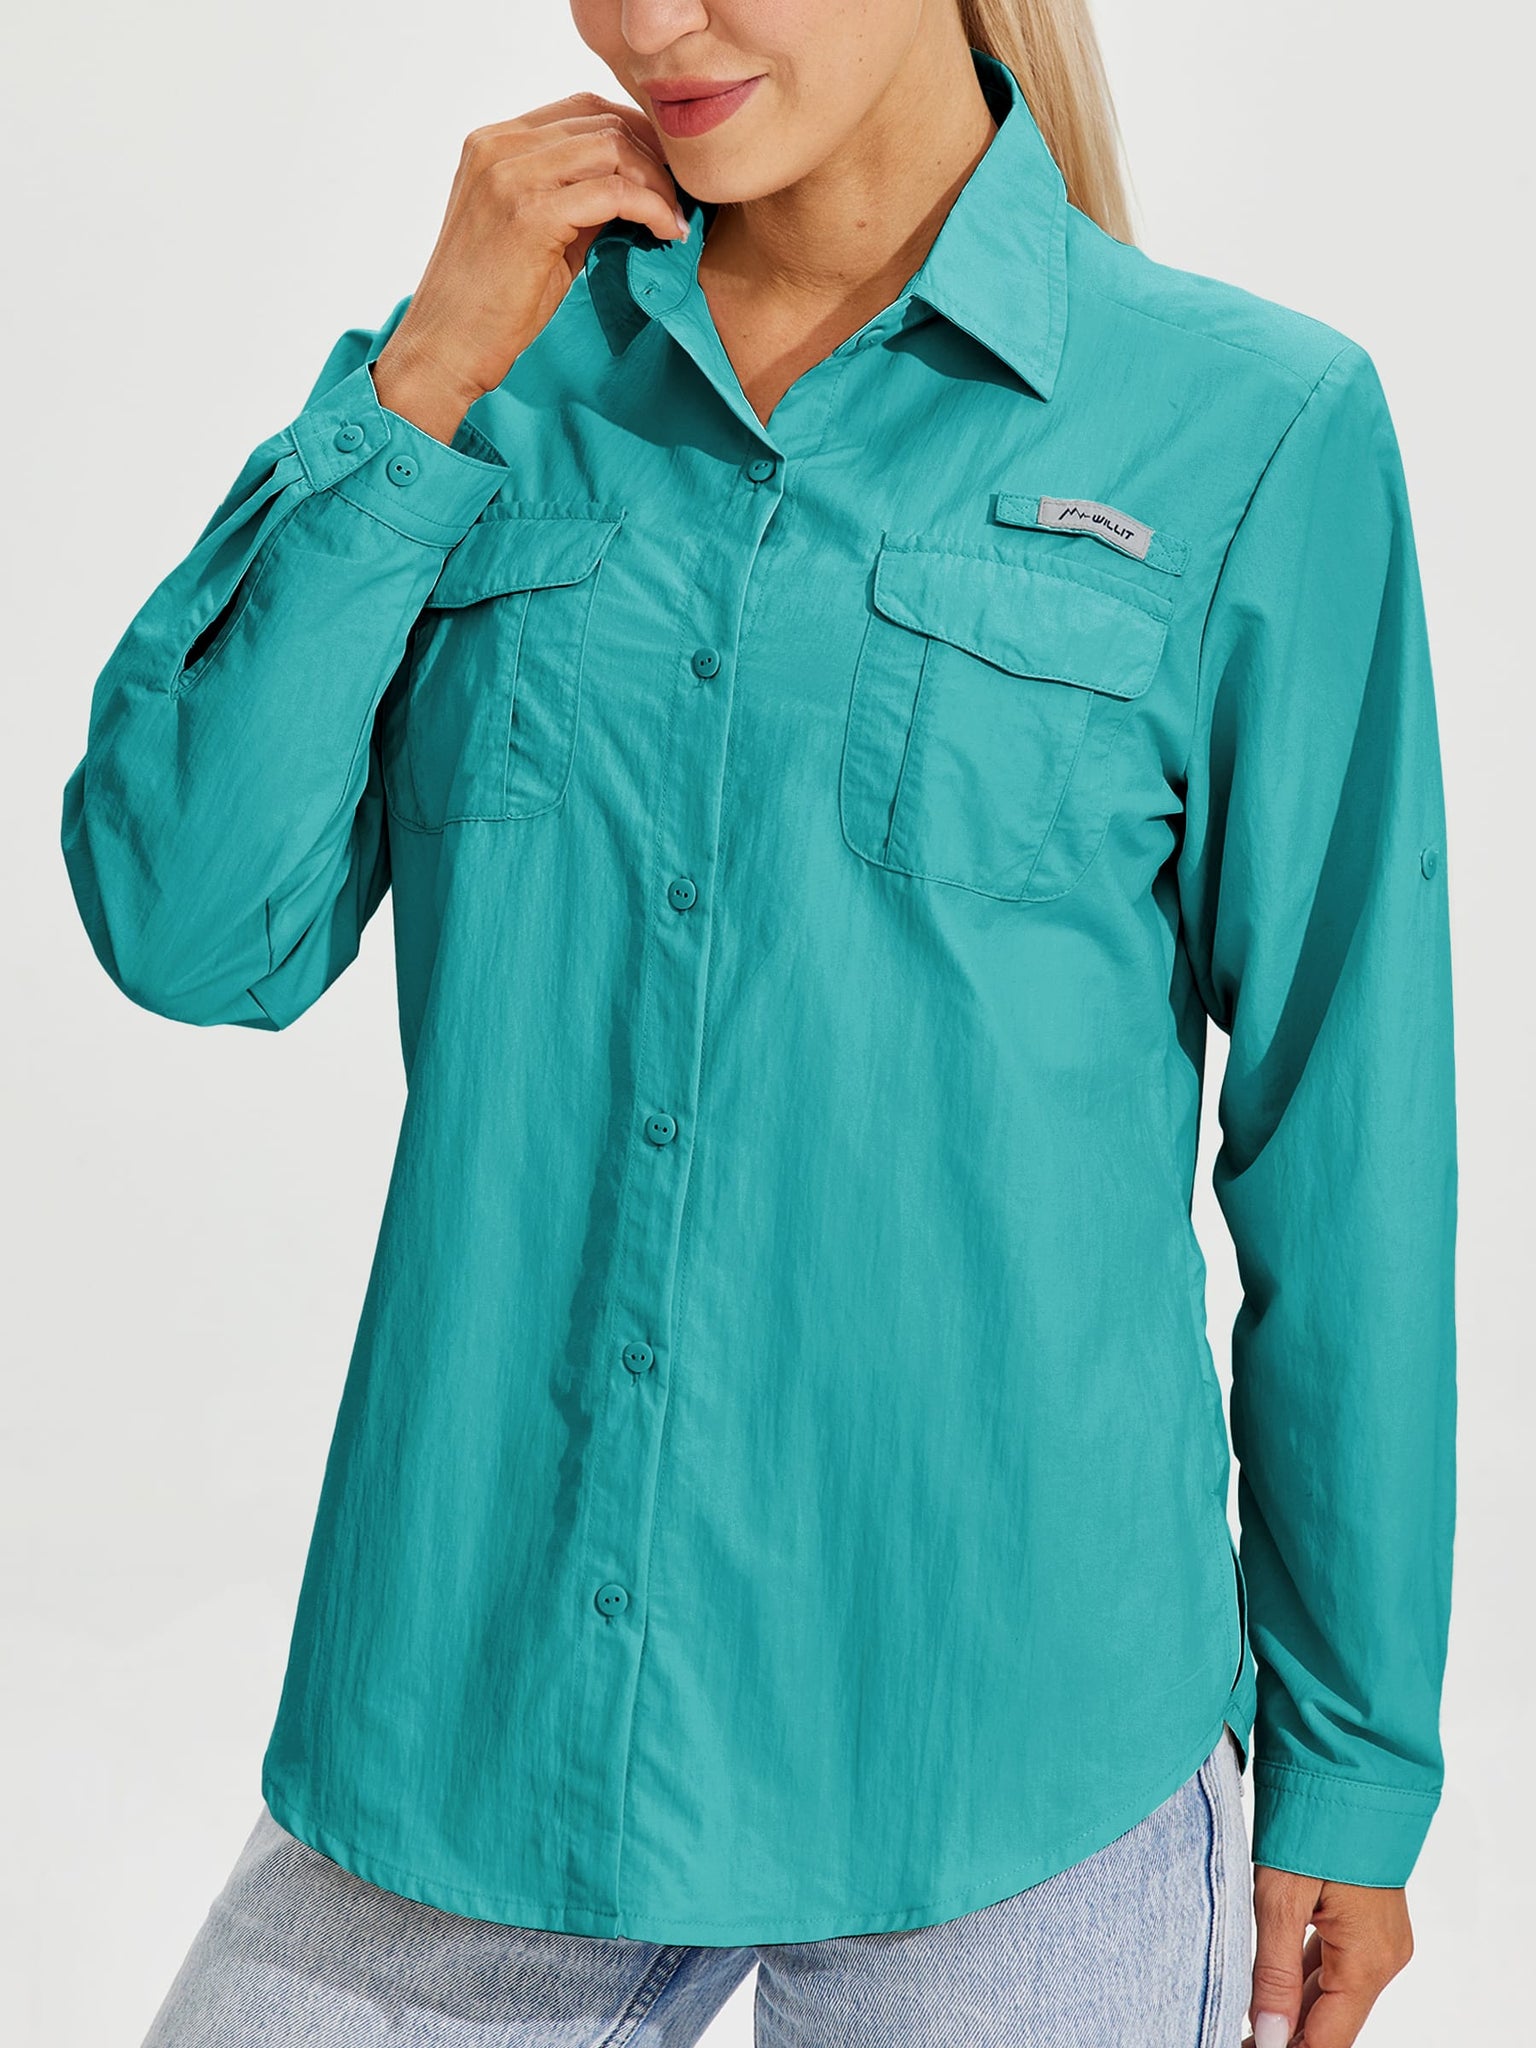 Women's Long Sleeve Fishing Shirt_Teal_model1